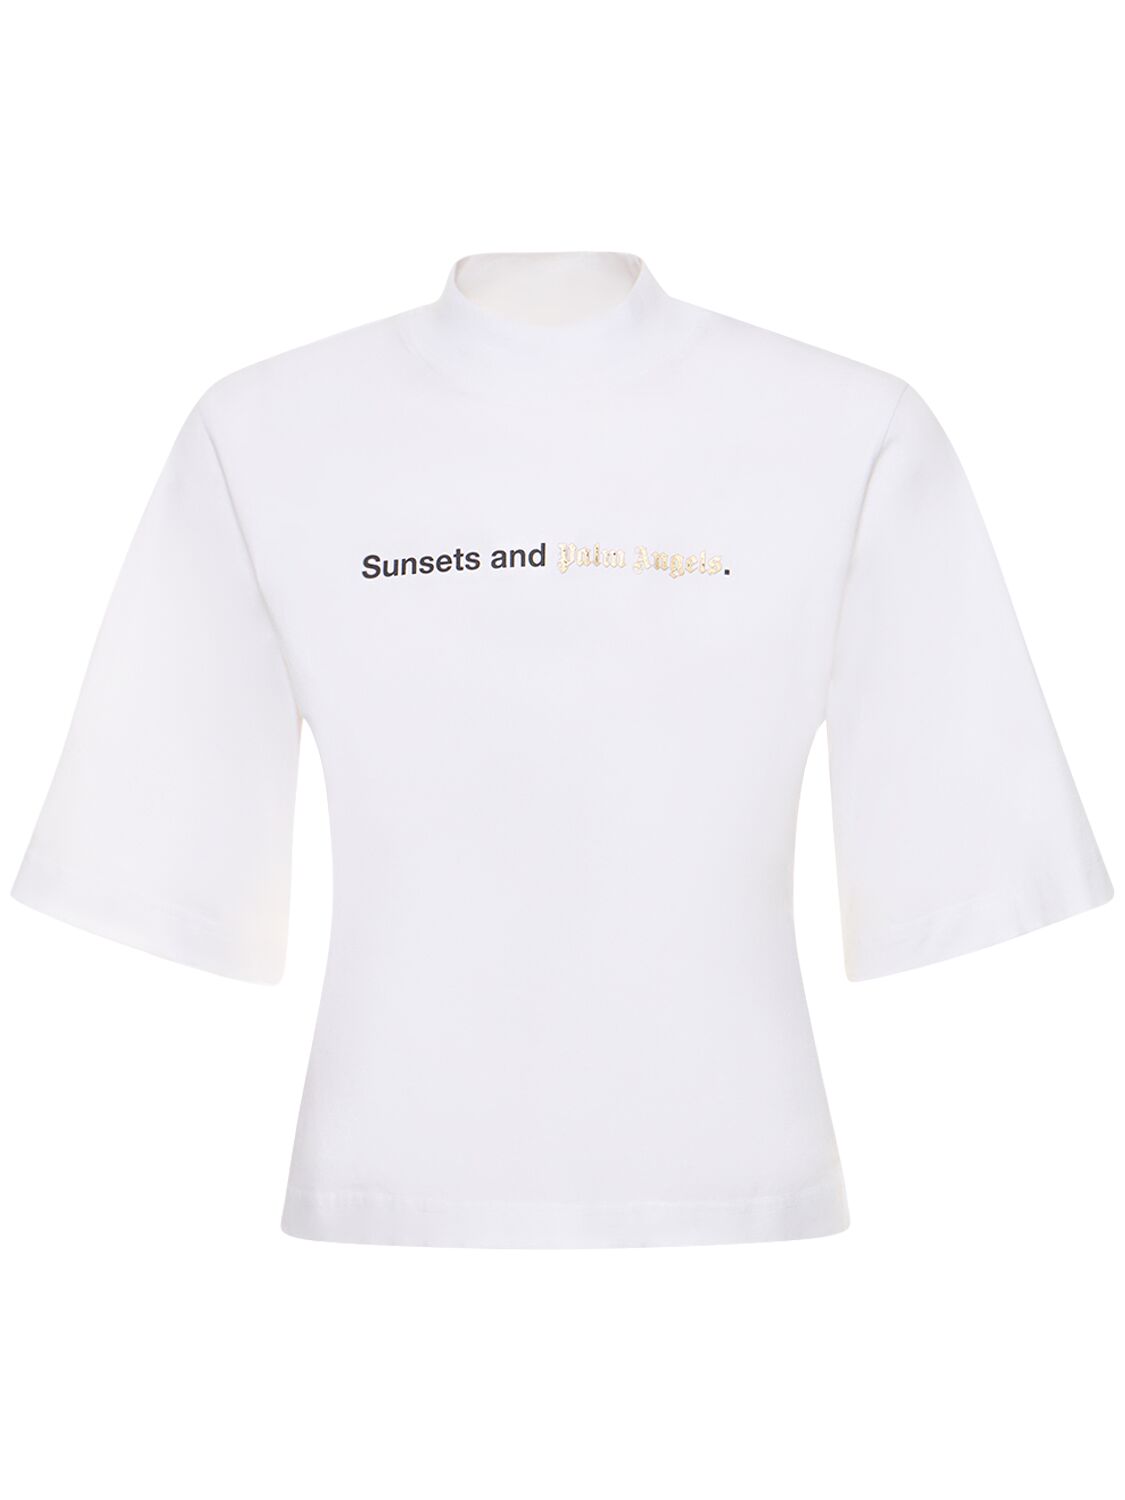 Sunset Cotton Jersey T-shirt – WOMEN > CLOTHING > T-SHIRTS